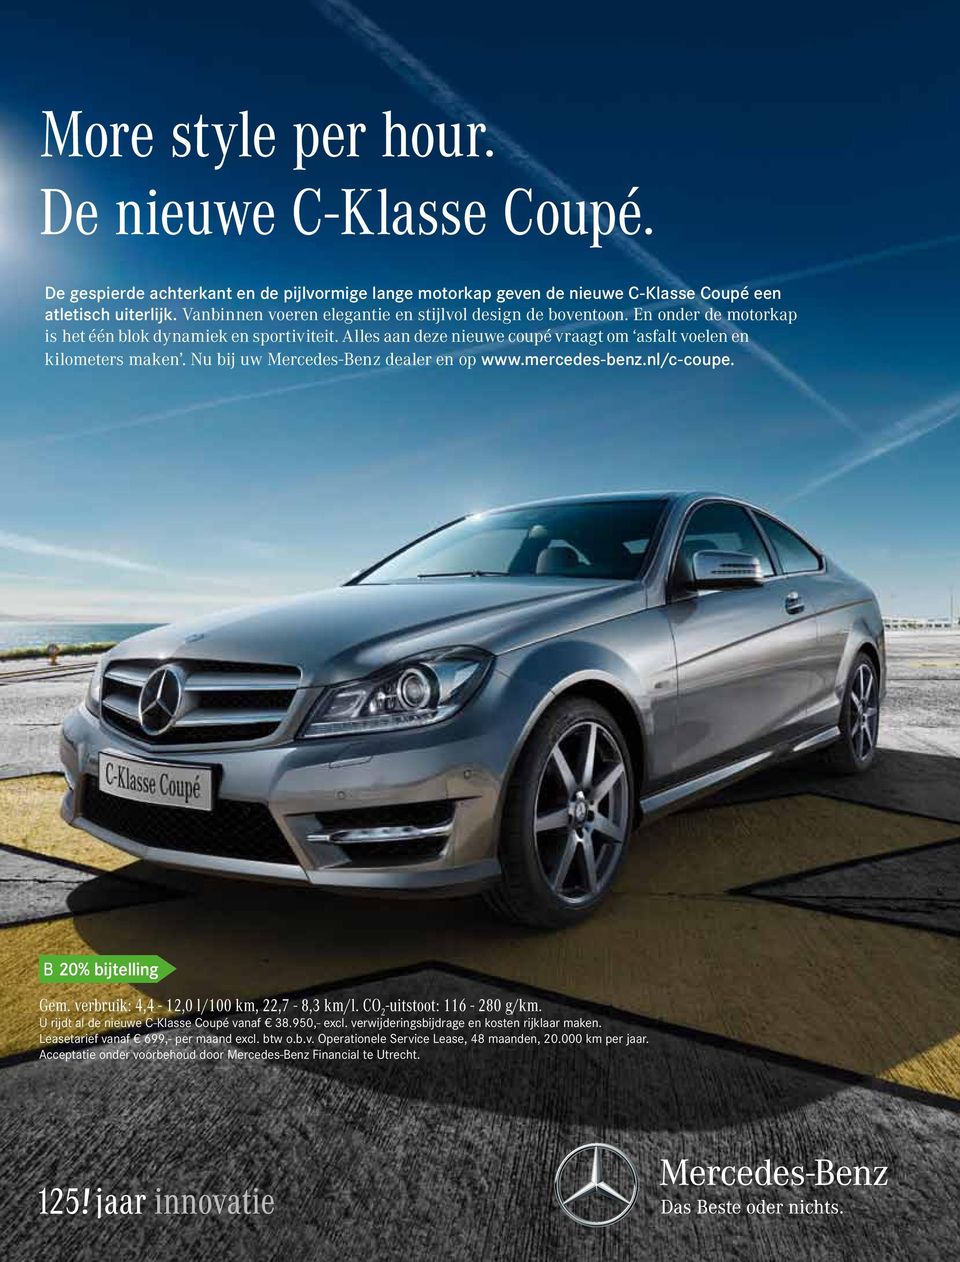 Nu bij uw Mercedes-Benz dealer en op www.mercedes-benz.nl/c-coupe. Gem. verbruik: 4,4-12,0 l/100 km, 22,7-8,3 km/l. CO 2 -uitstoot: 116-280 g/km. U rijdt al de nieuwe C-Klasse Coupé vanaf 38.